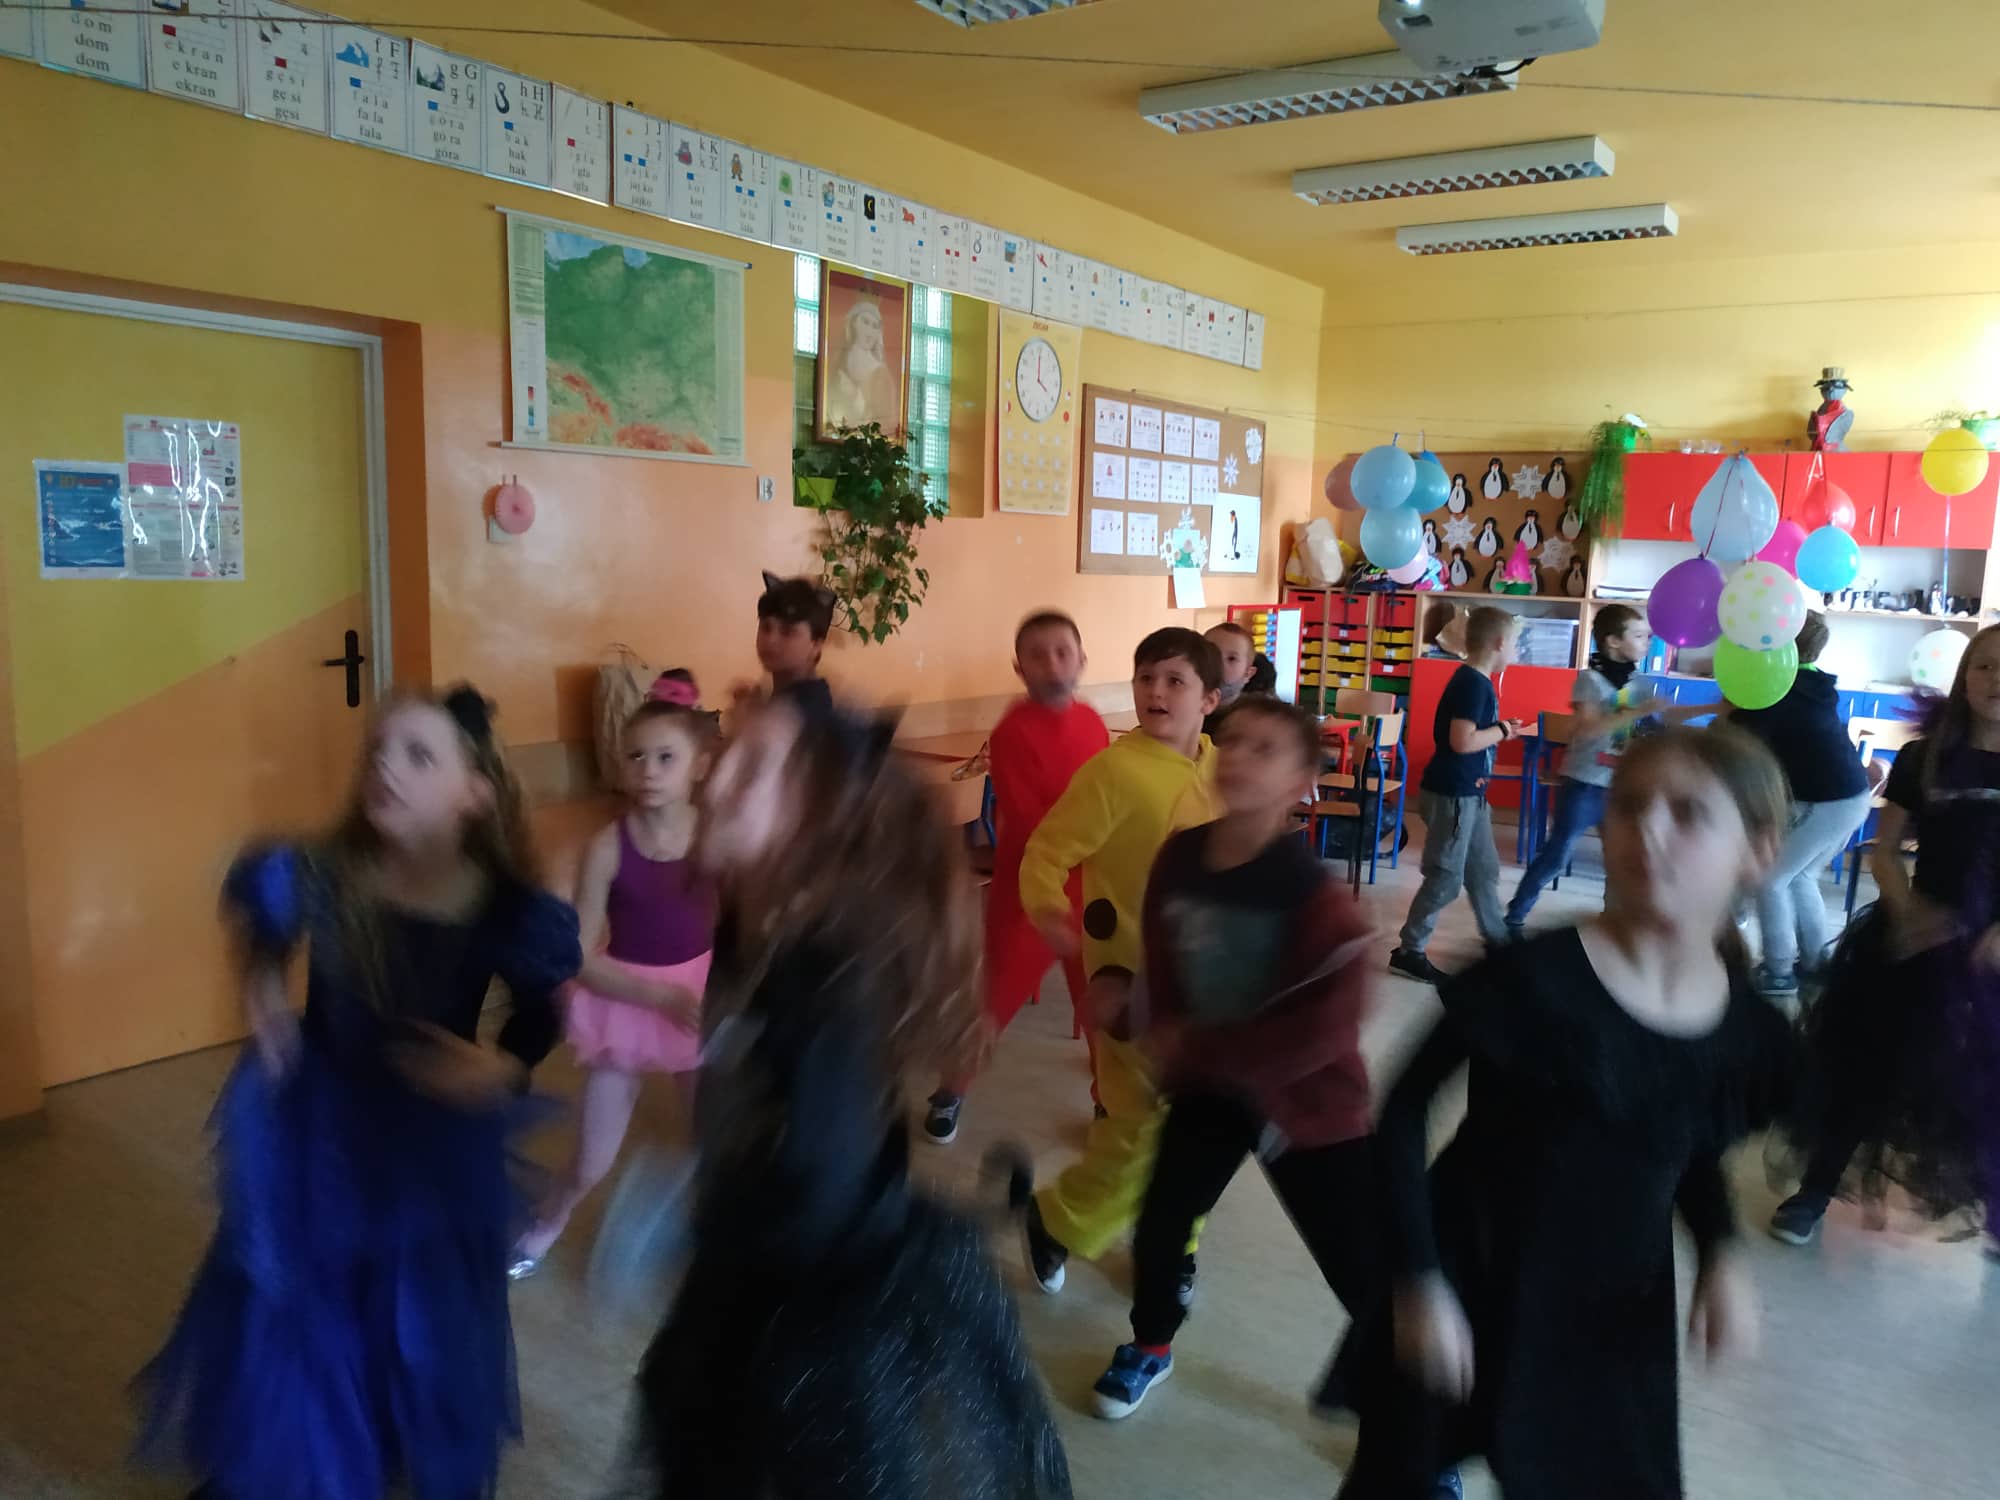 Dzieci w strojach karnawałowych tańczą